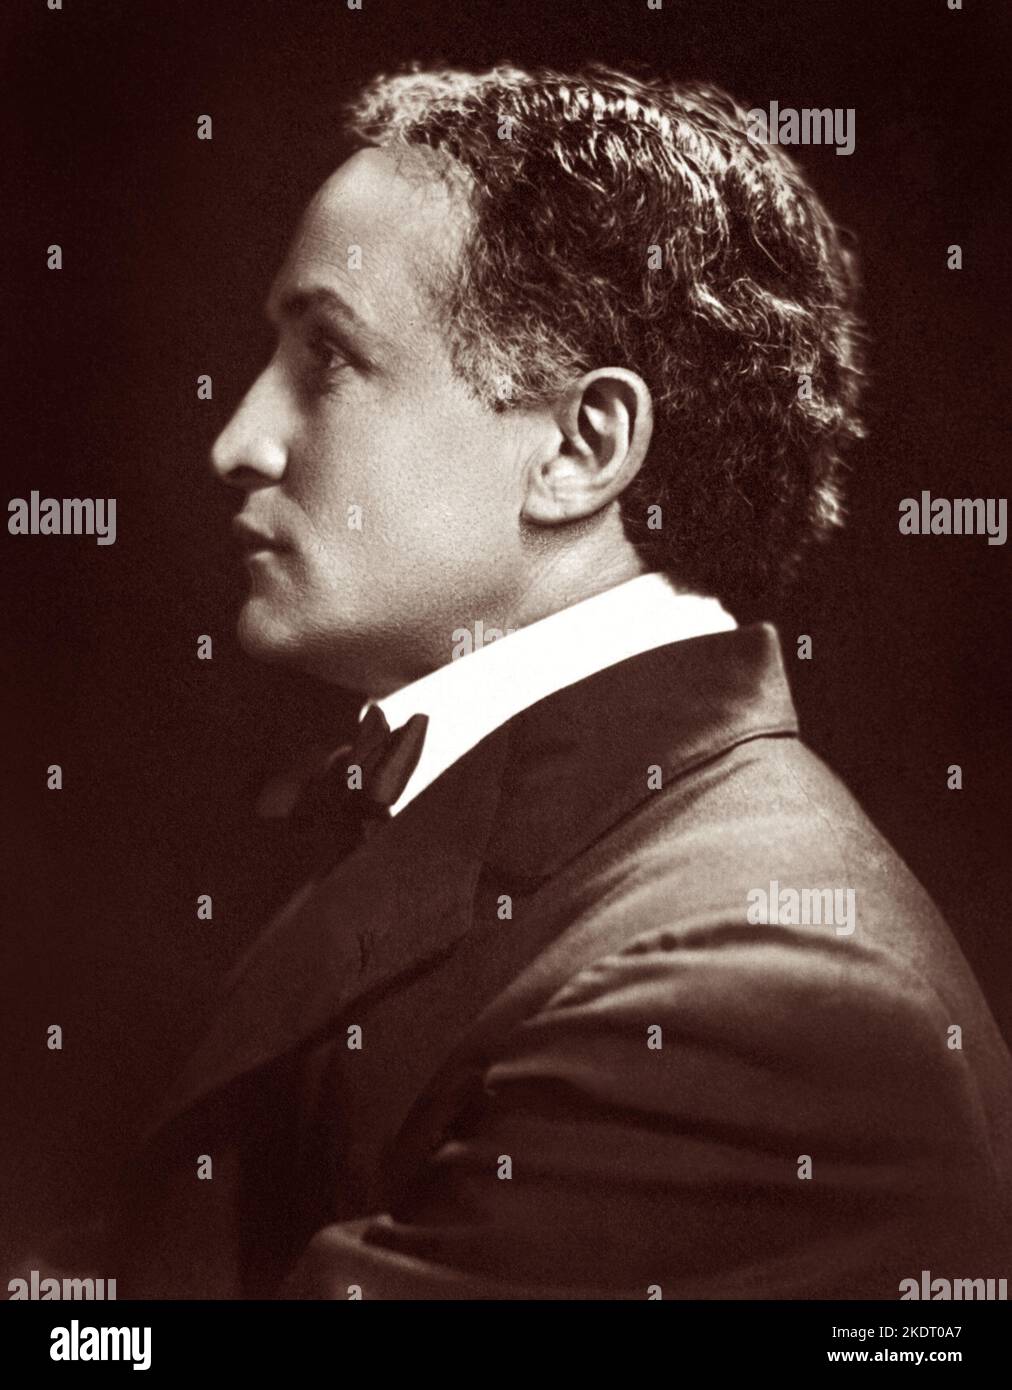 Harry Houdini (1874-1926), illusionista e artista di fuga ungherese-americano, in un ritratto di profilo, c1920. Foto Stock